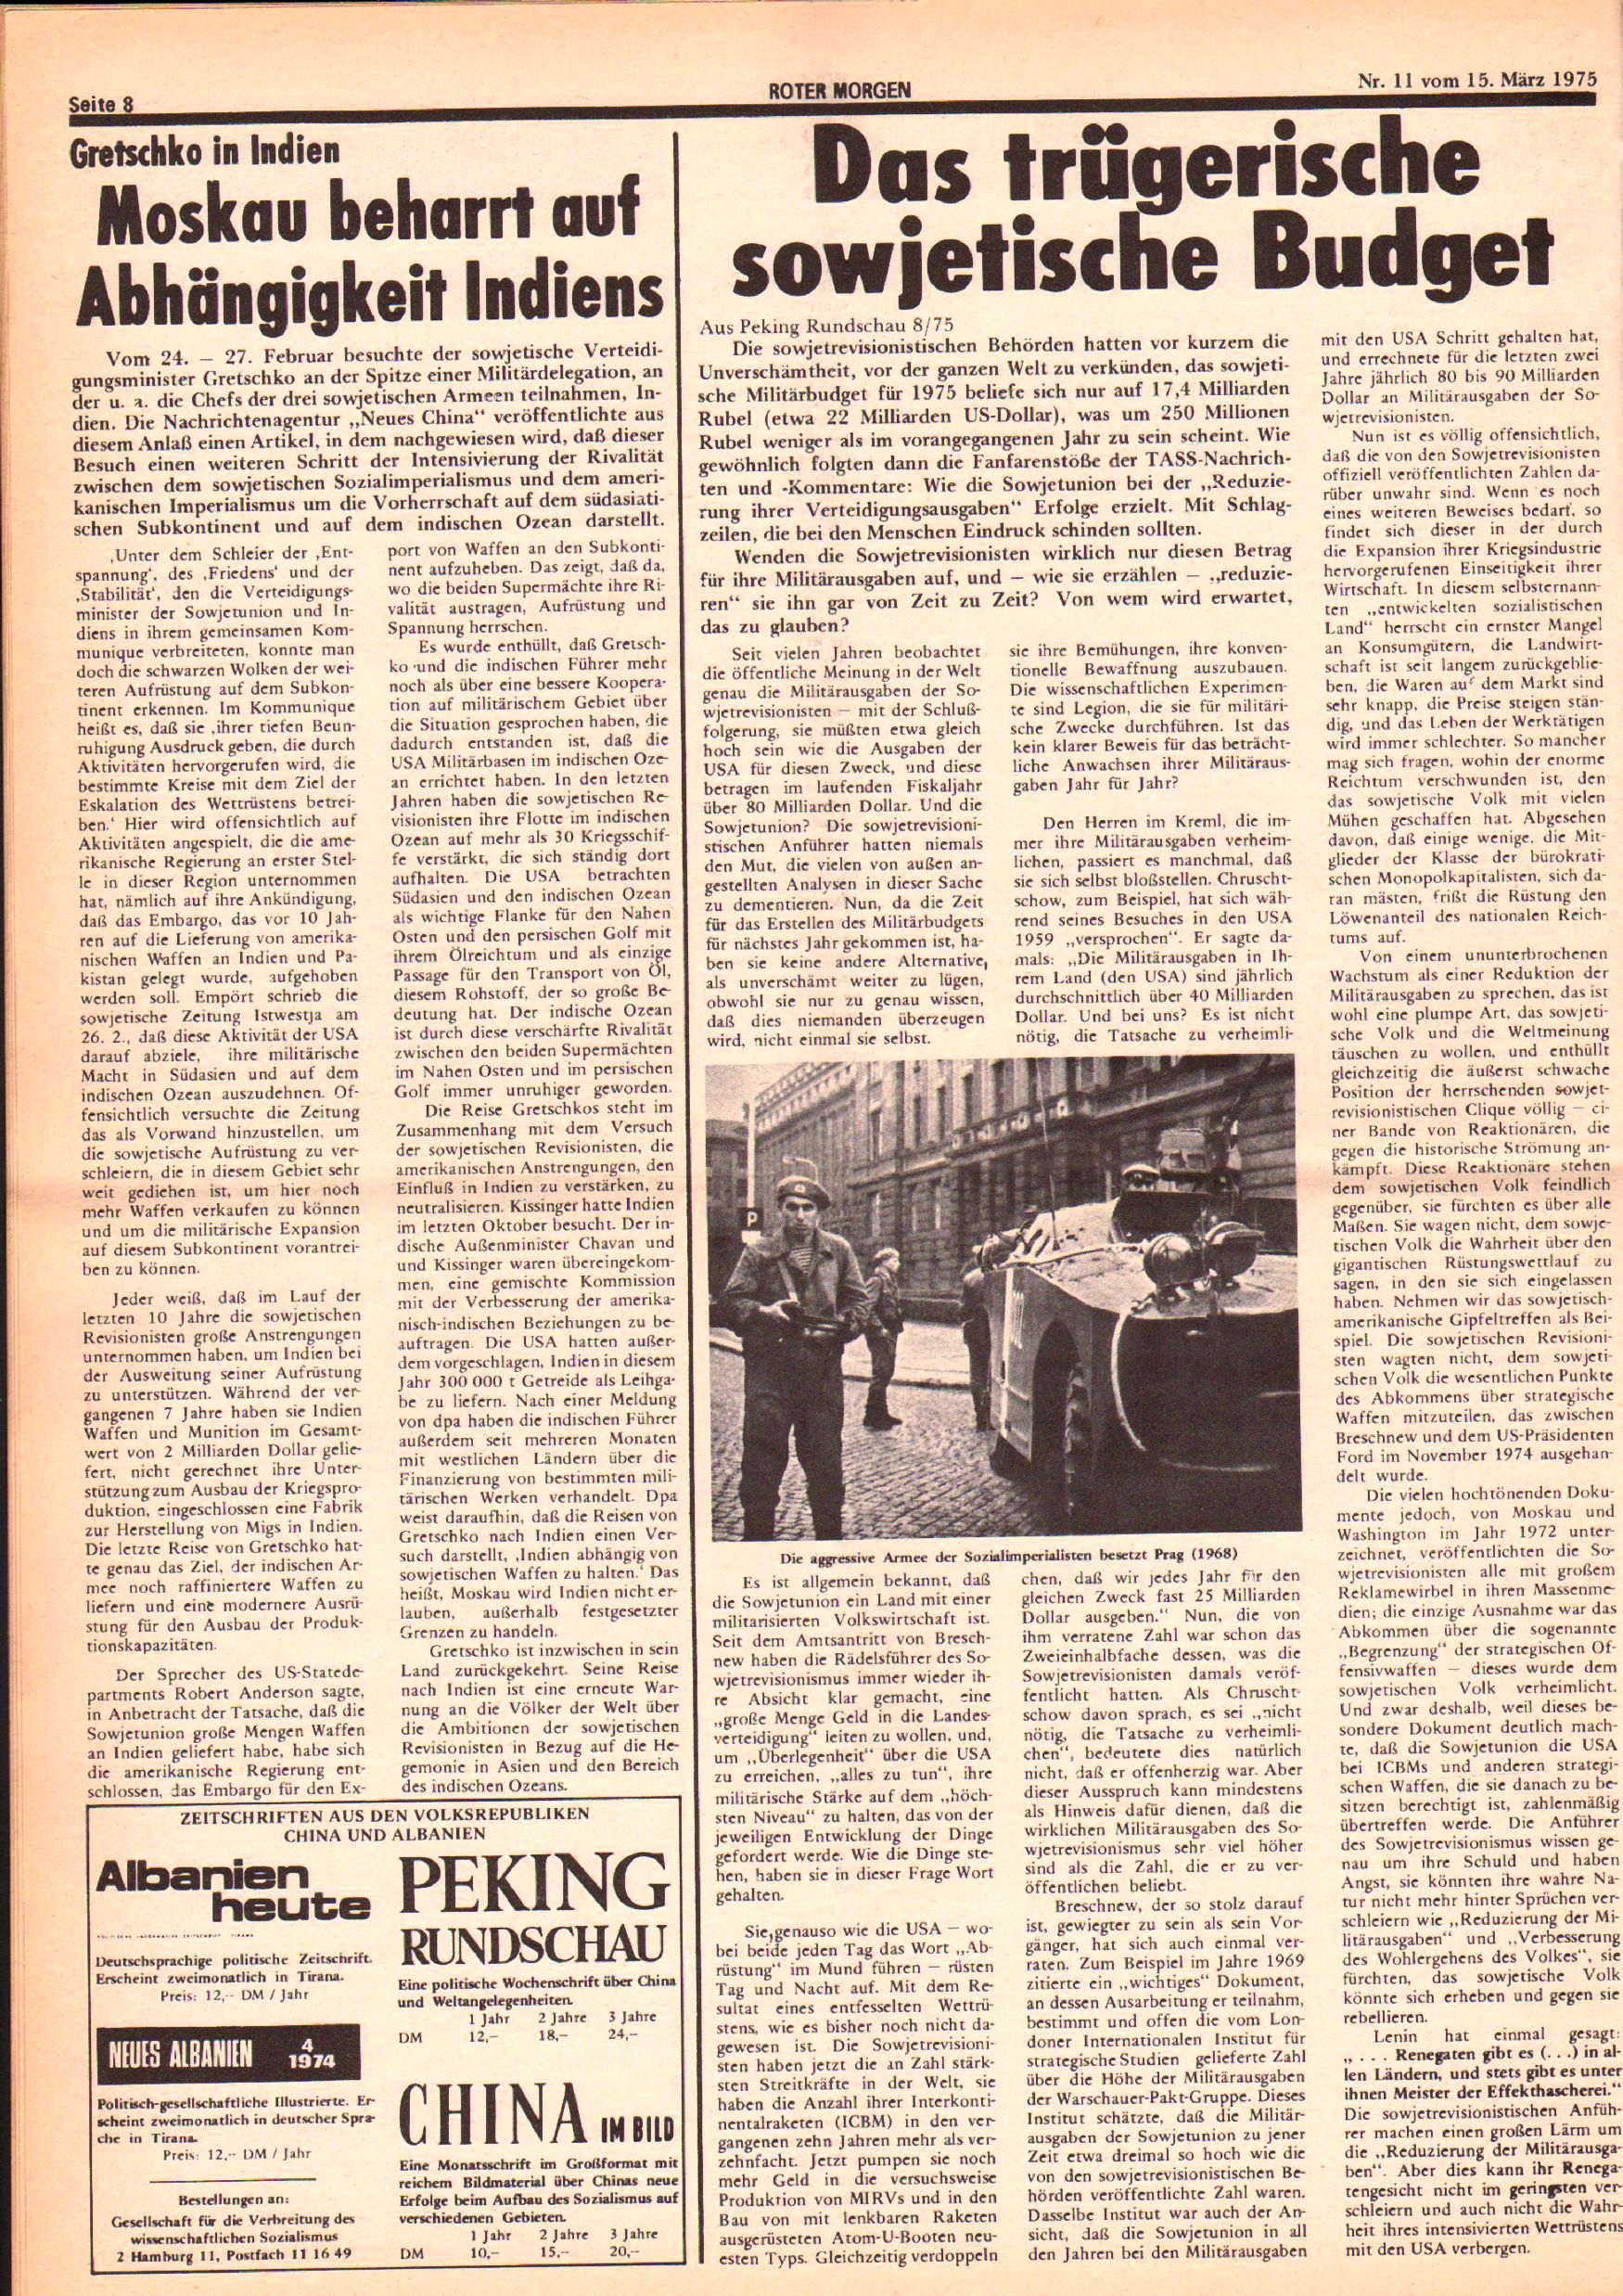 Roter Morgen, 9. Jg., 15. März 1975, Nr. 11, Seite 8